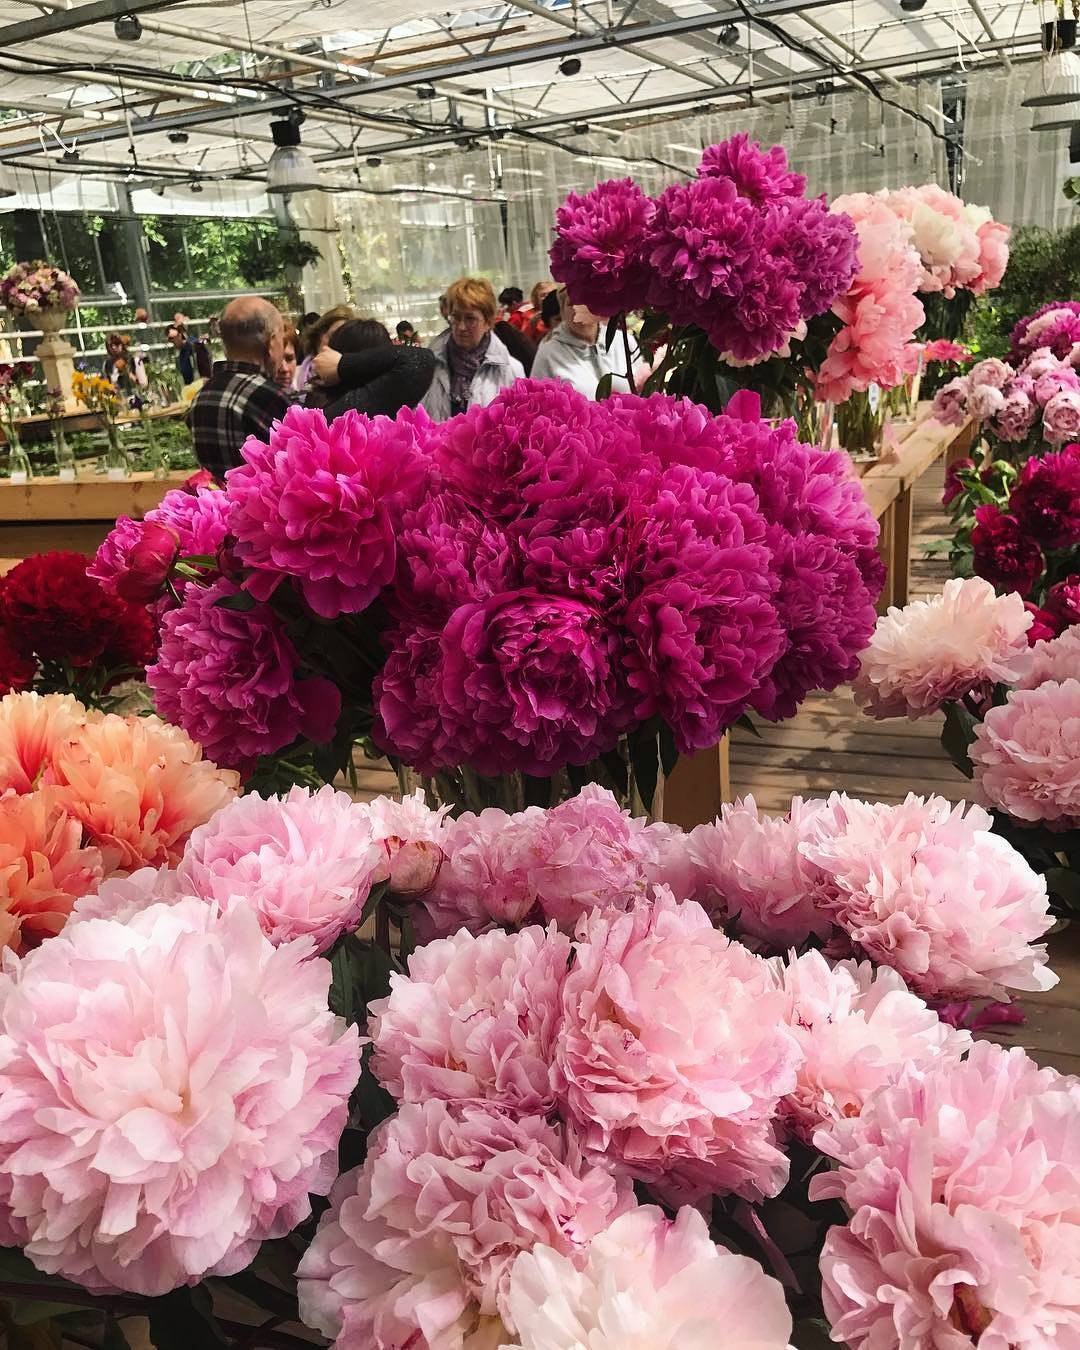 Цветочные выставки в июне: розы, пионы, ирисы - где будет очень красиво?